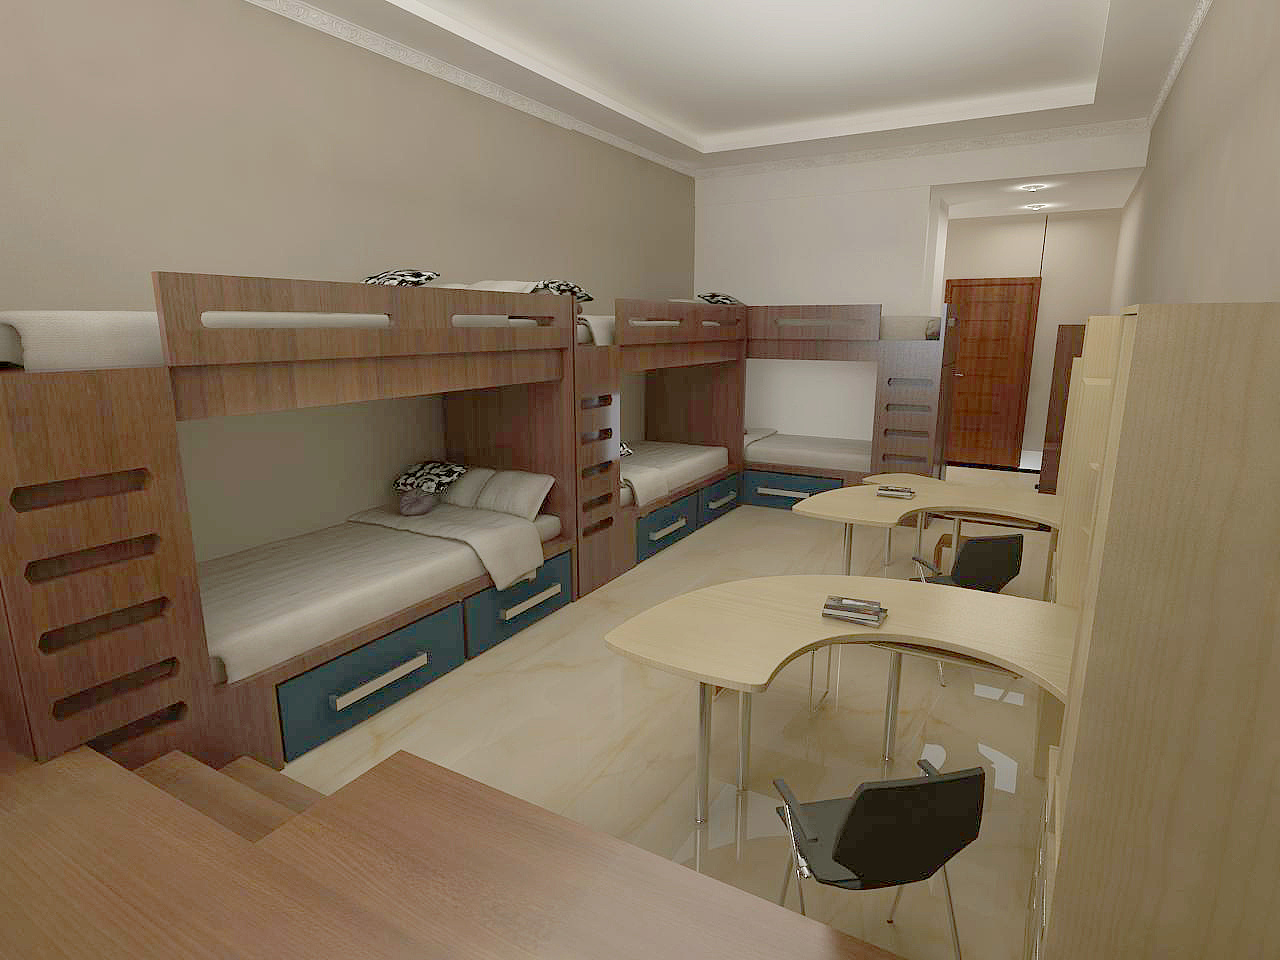 大学寝室居住空间设计(2人,4人,6人寝室)